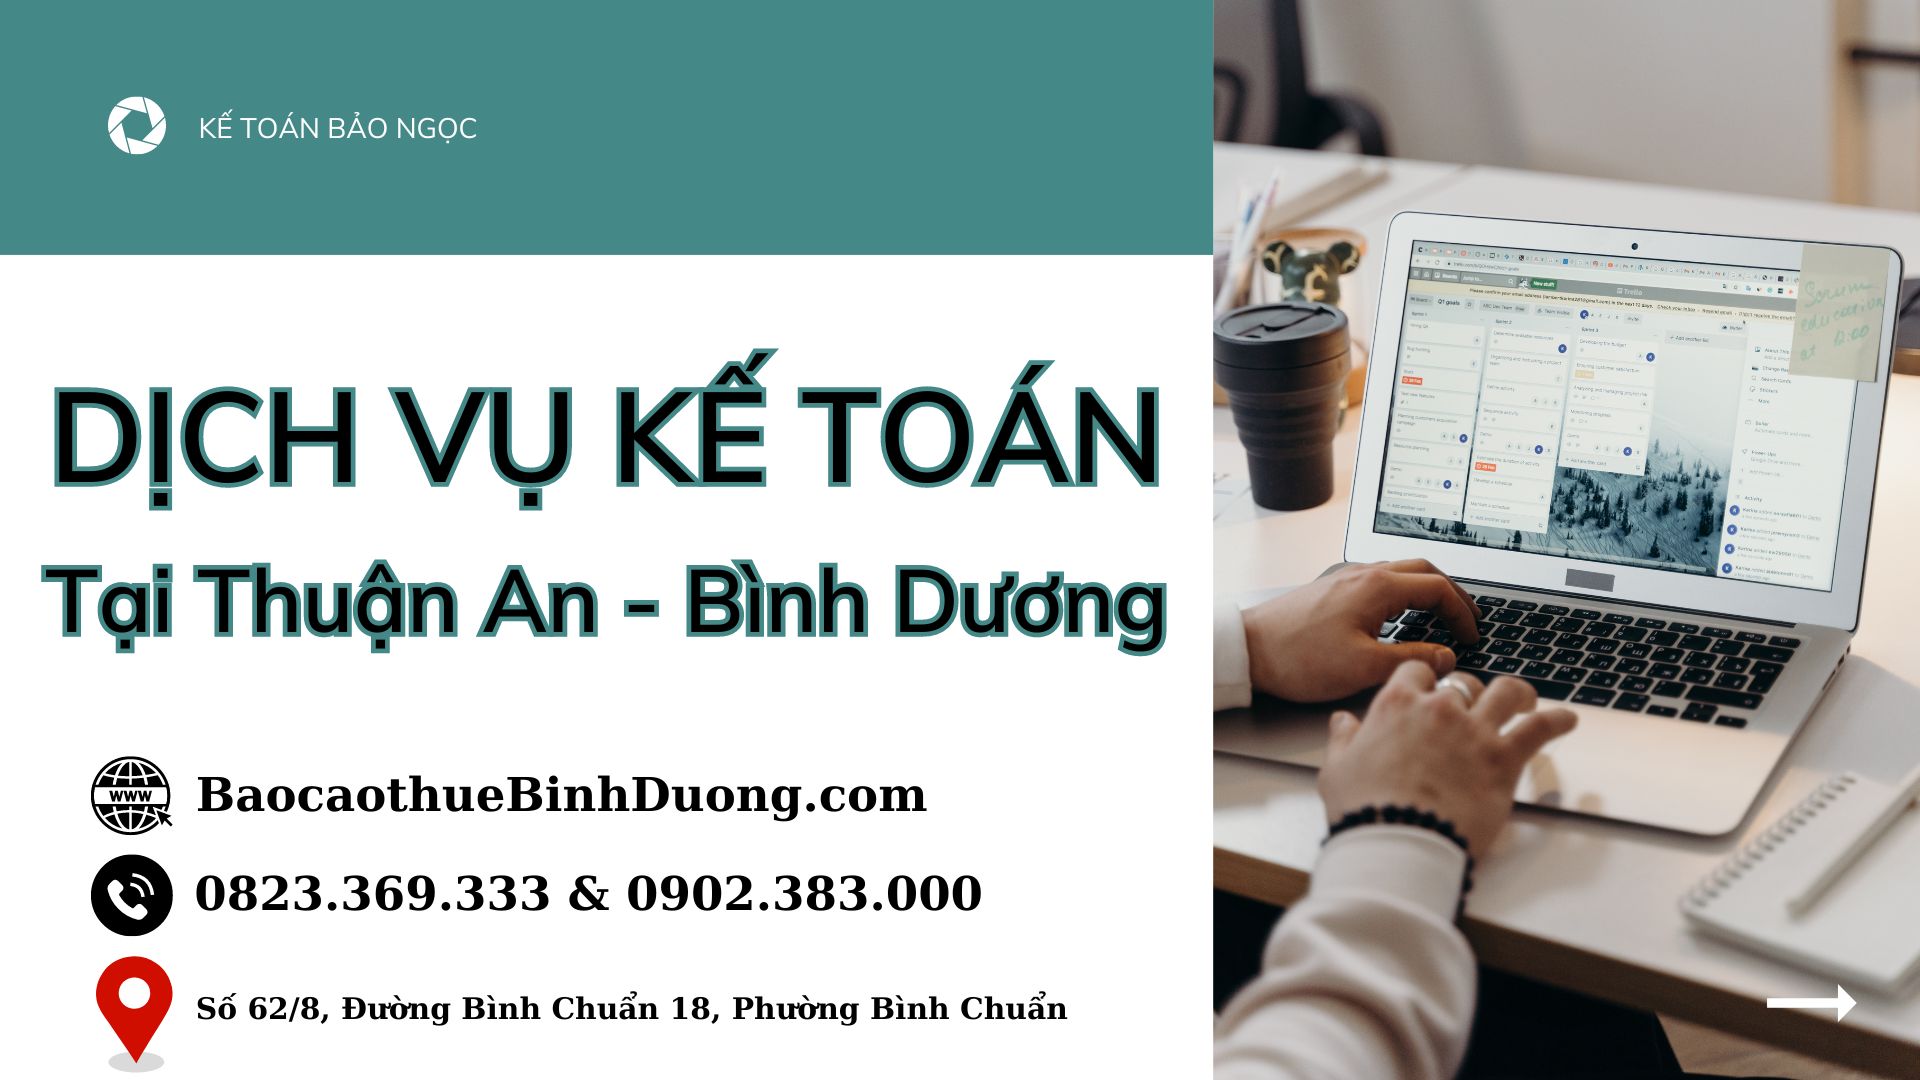 Dịch vụ kế toán Thuận an - Bình Dương